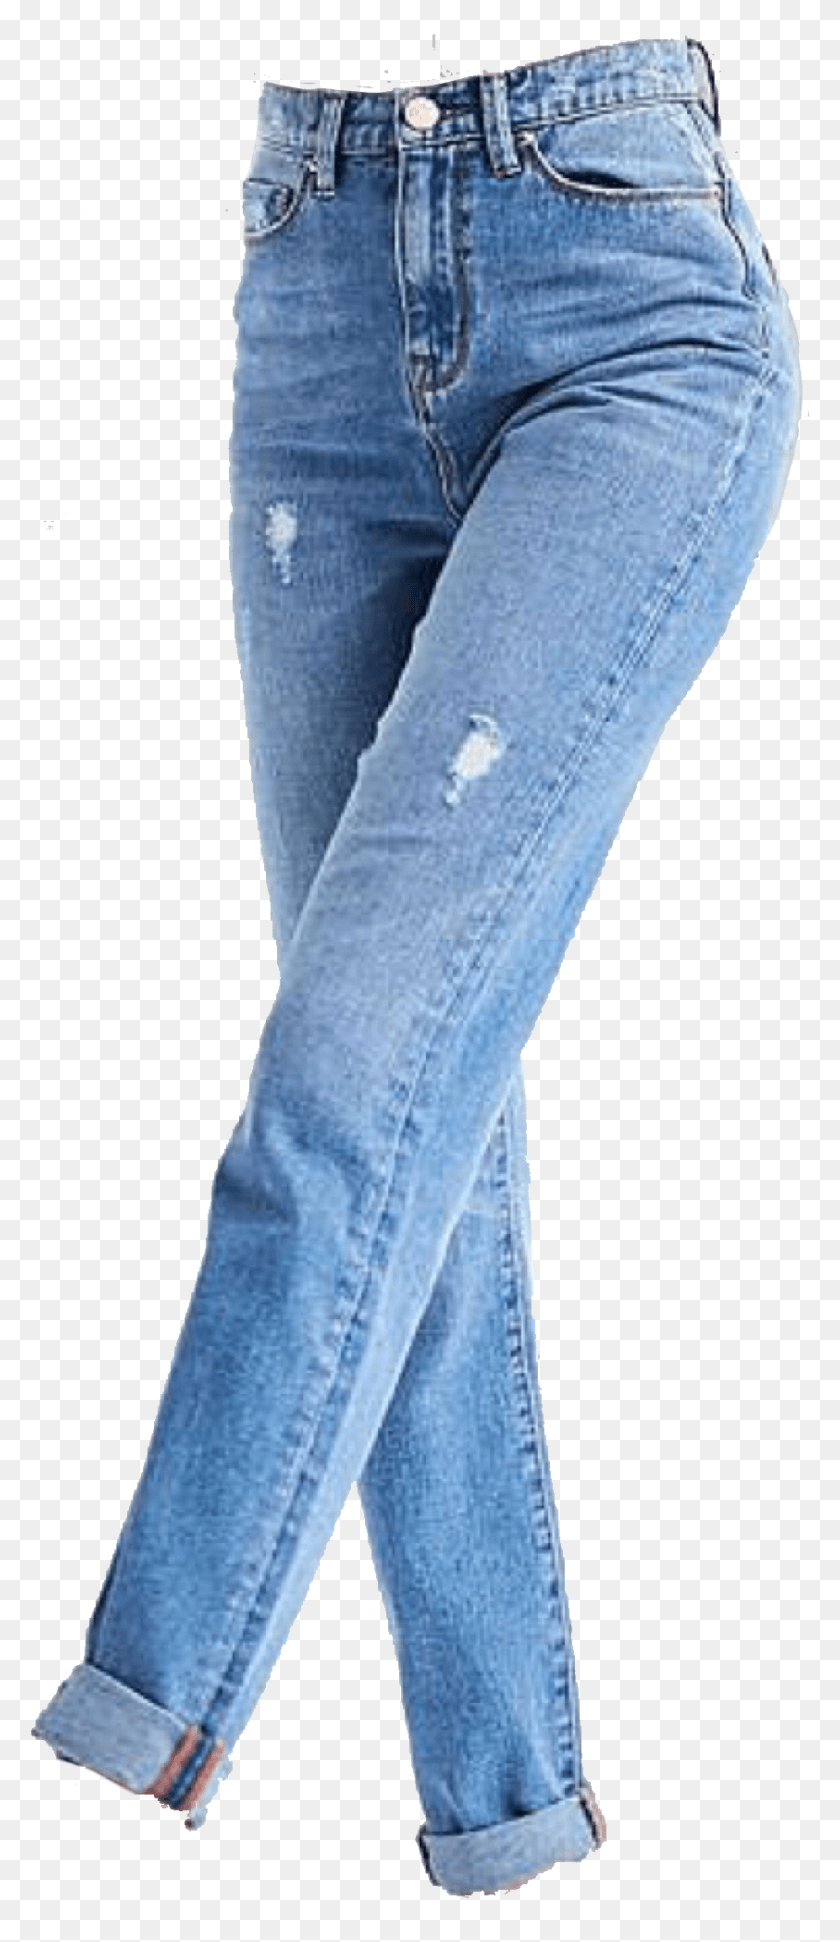 843x2035 Descargar Png Jeans Ajustados Ajustados Ajustados Súper Ajustados Pantalones Vaqueros De Nicho Transparente Meme, Pantalones, Ropa, Vestimenta Hd Png